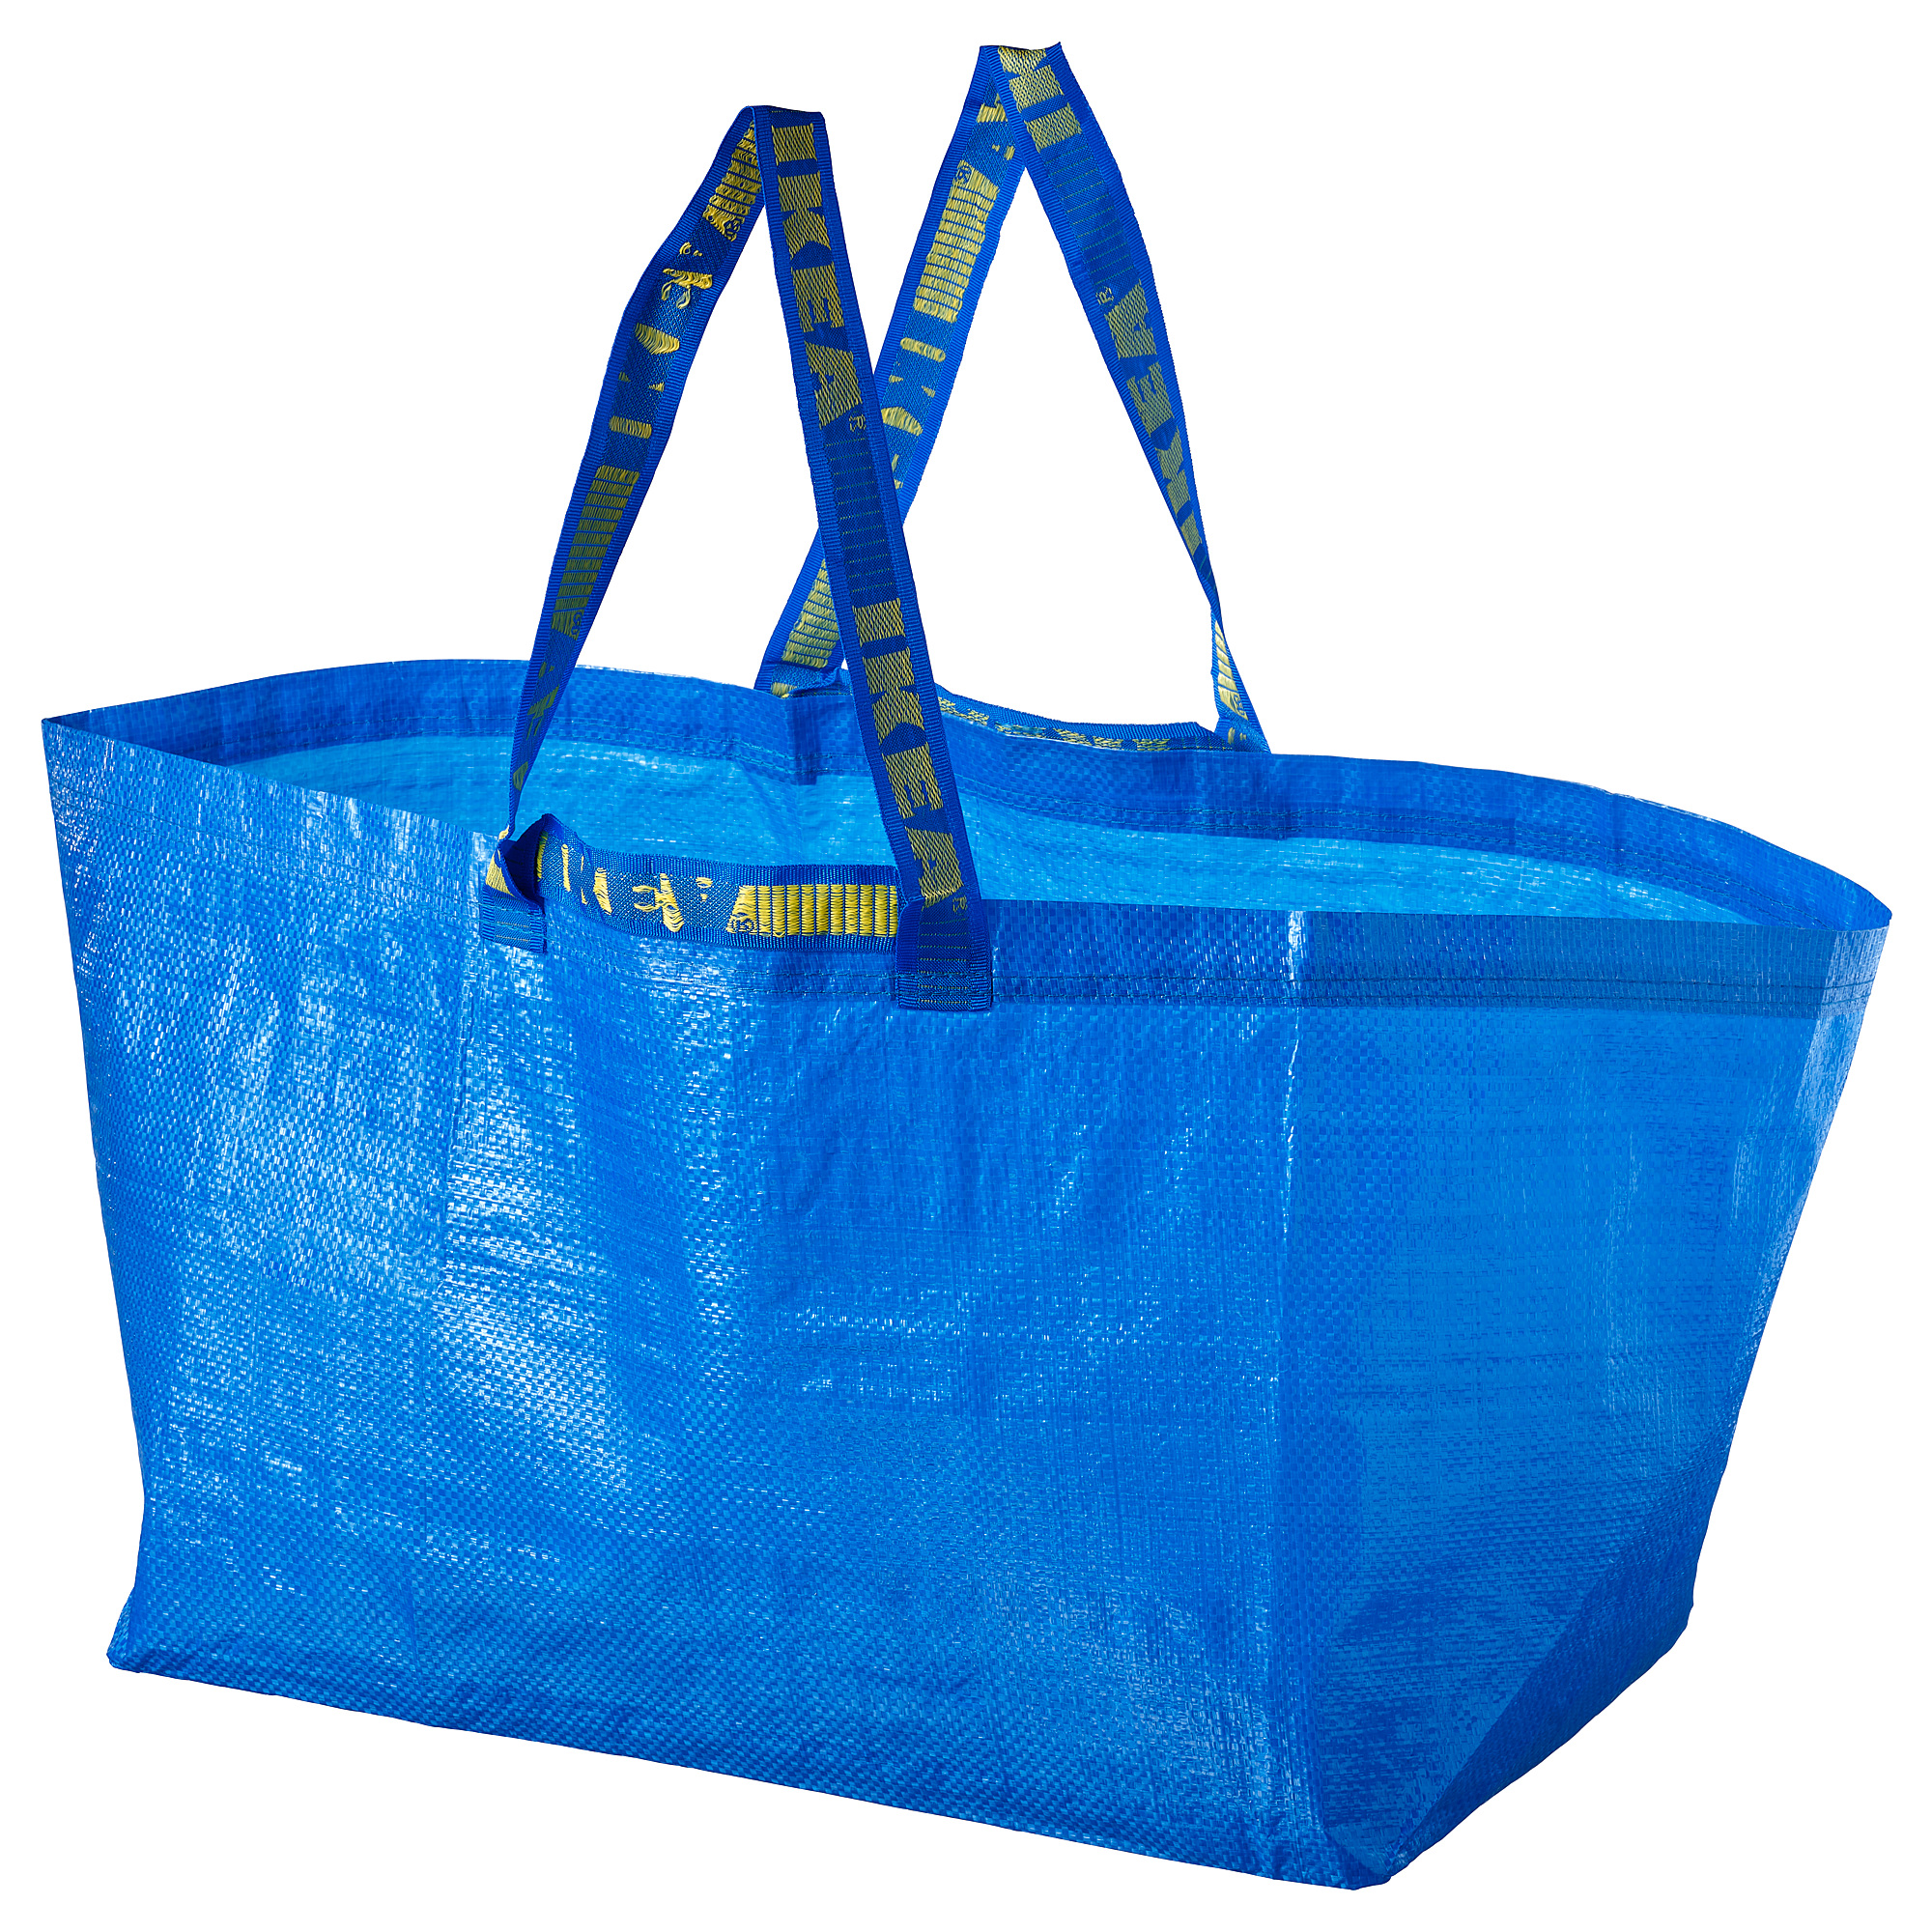 FRAKTA carrier bag, large